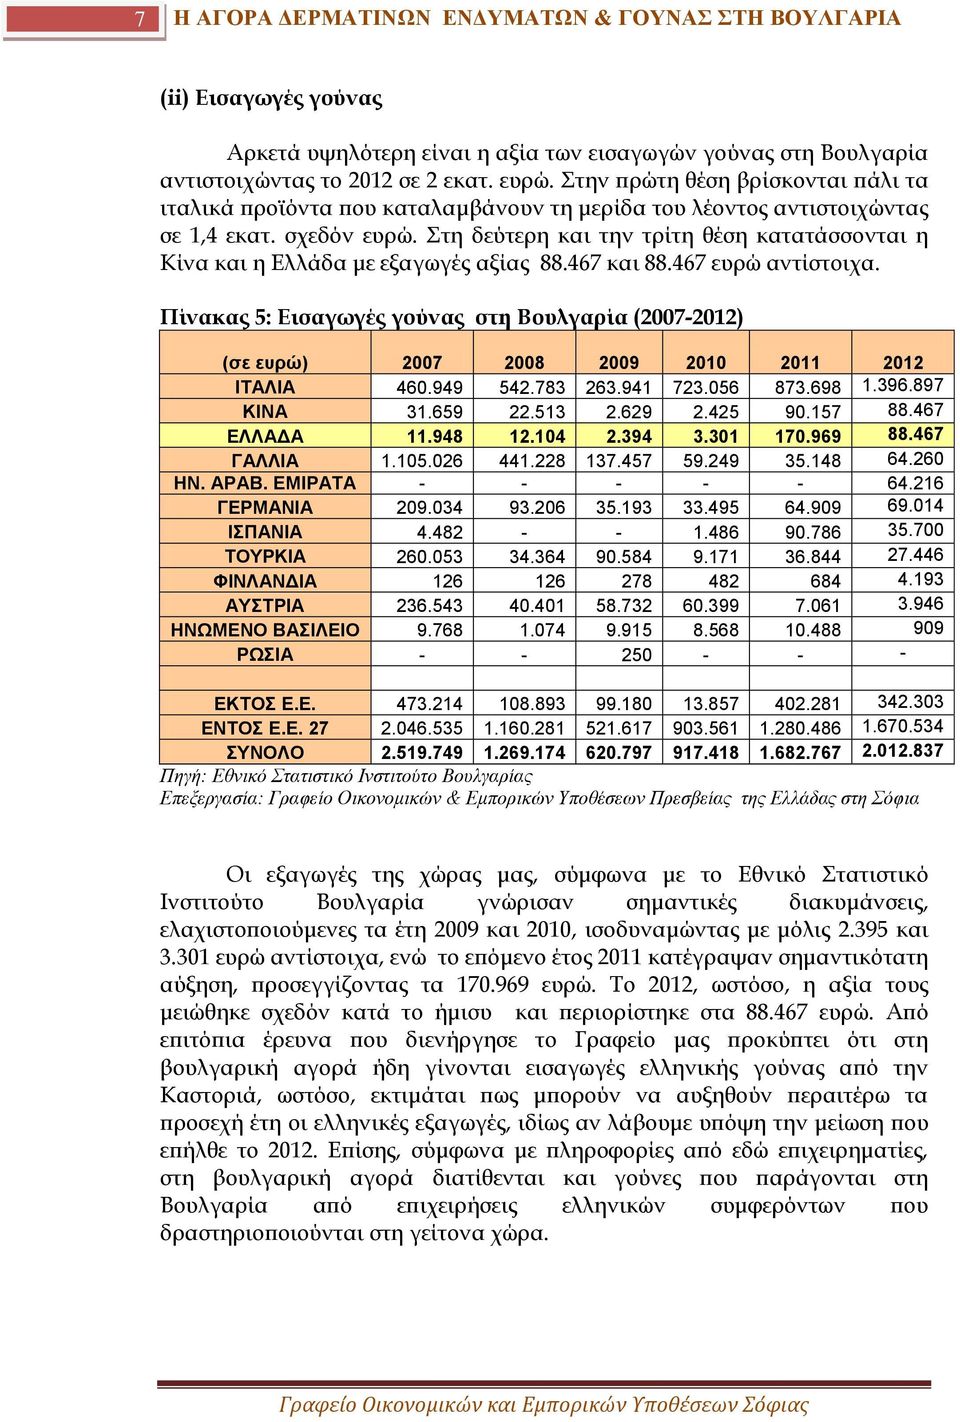 Στη δεύτερη και την τρίτη θέση κατατάσσονται η Κίνα και η Ελλάδα με εξαγωγές αξίας 88.467 και 88.467 ευρώ αντίστοιχα.